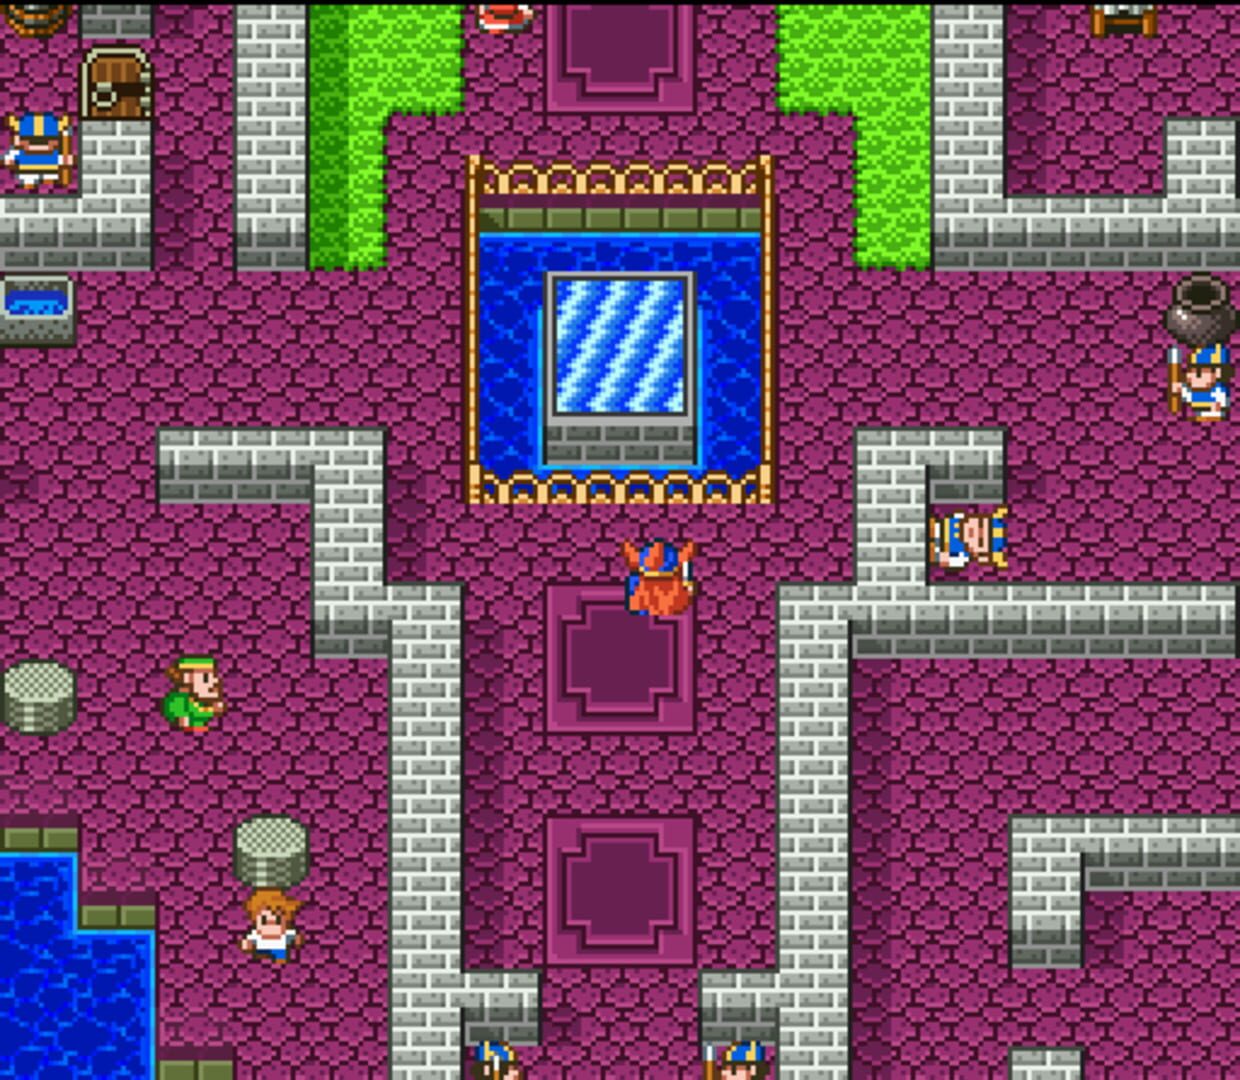 Captura de pantalla - Dragon Quest